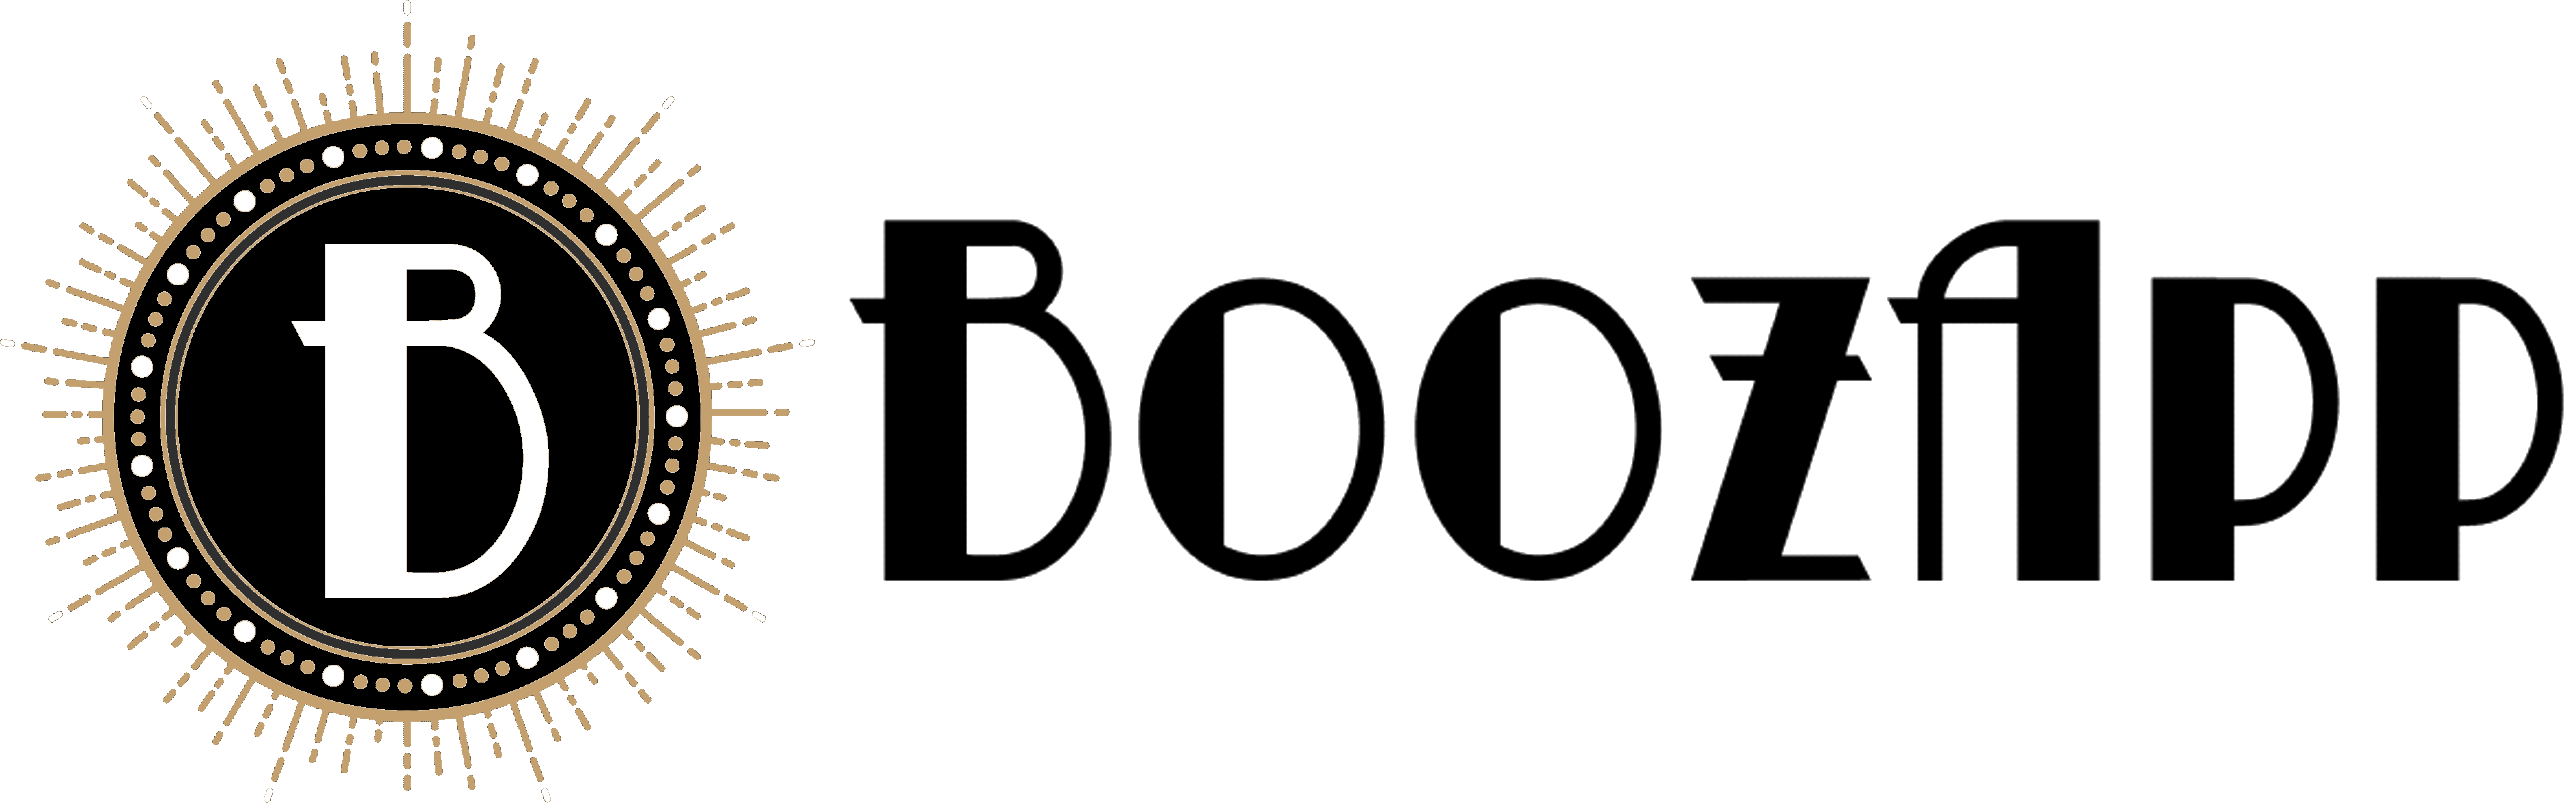 BoozApp Logo